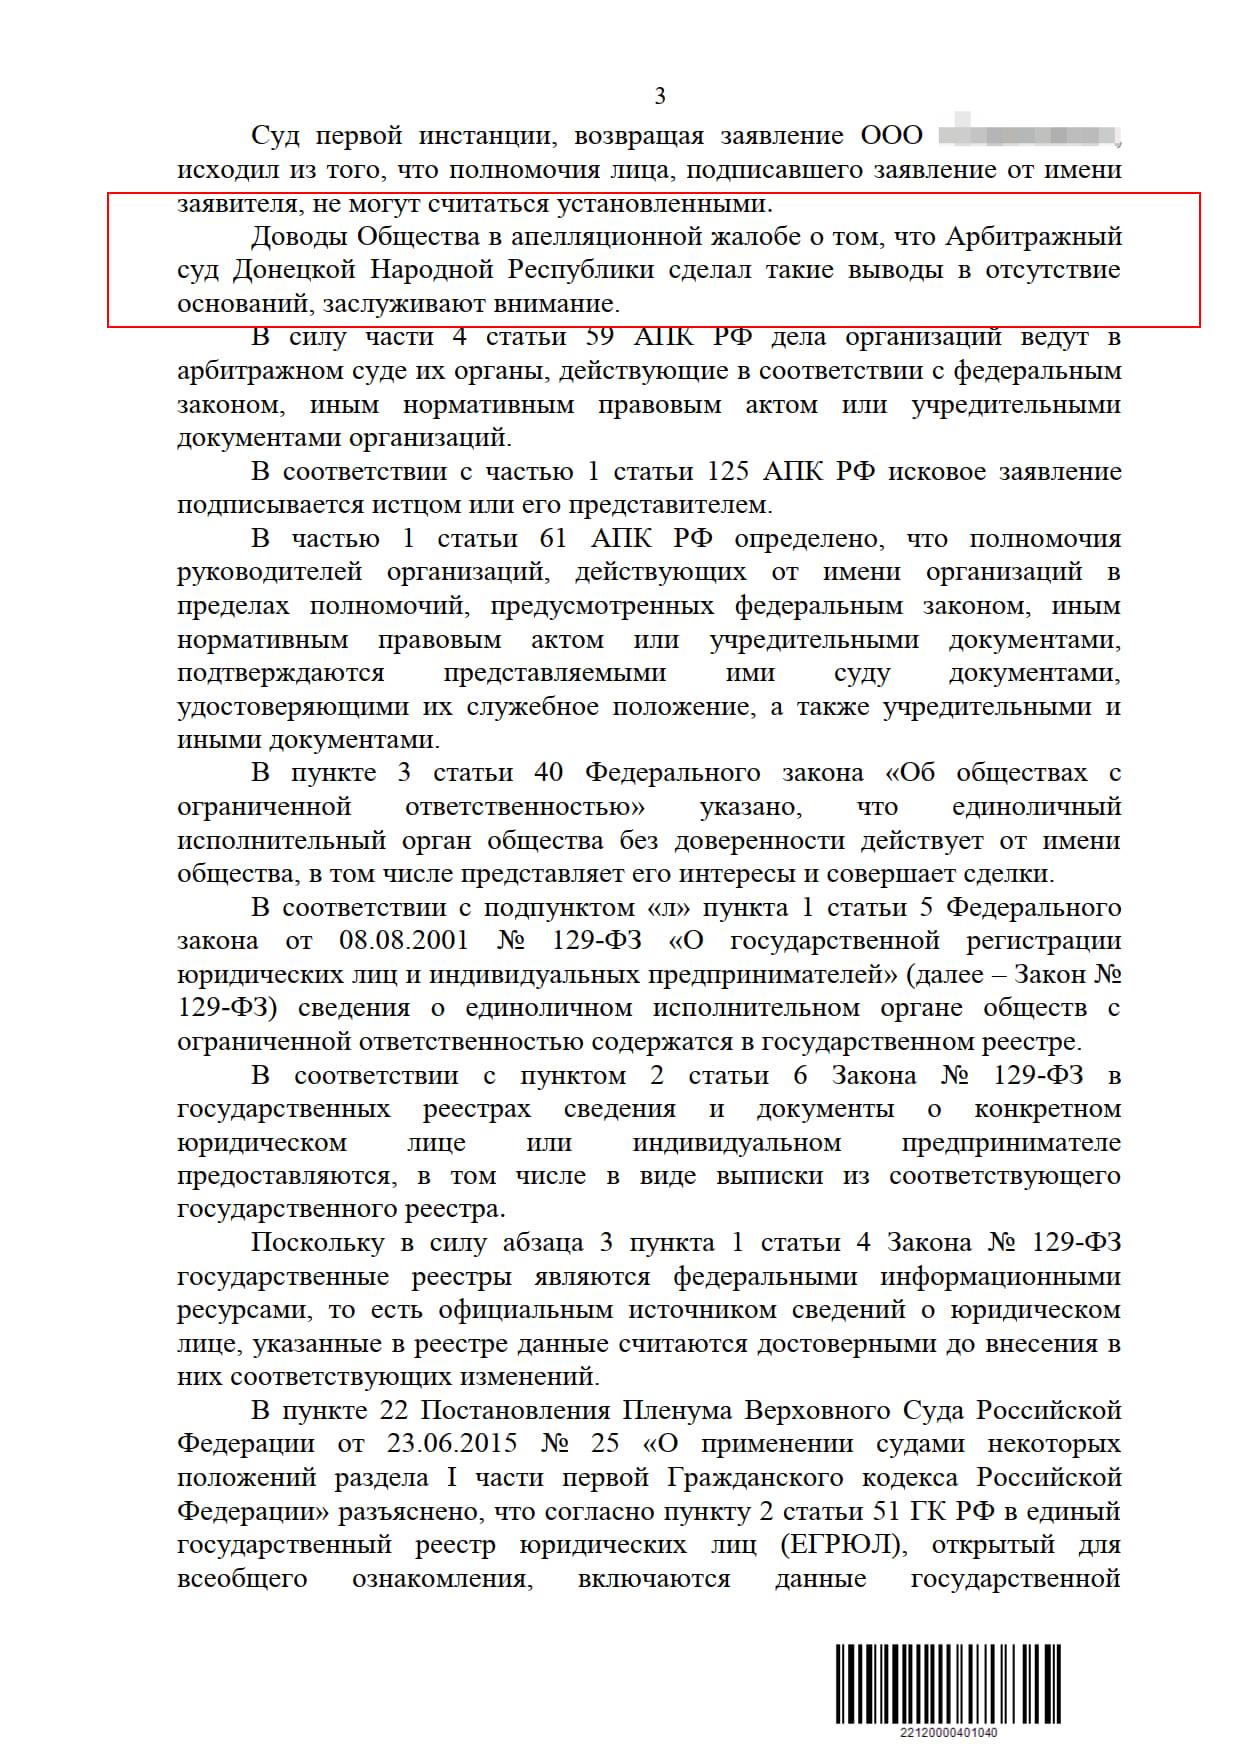 Апелляционное определения 21 арбитражного суда РФ